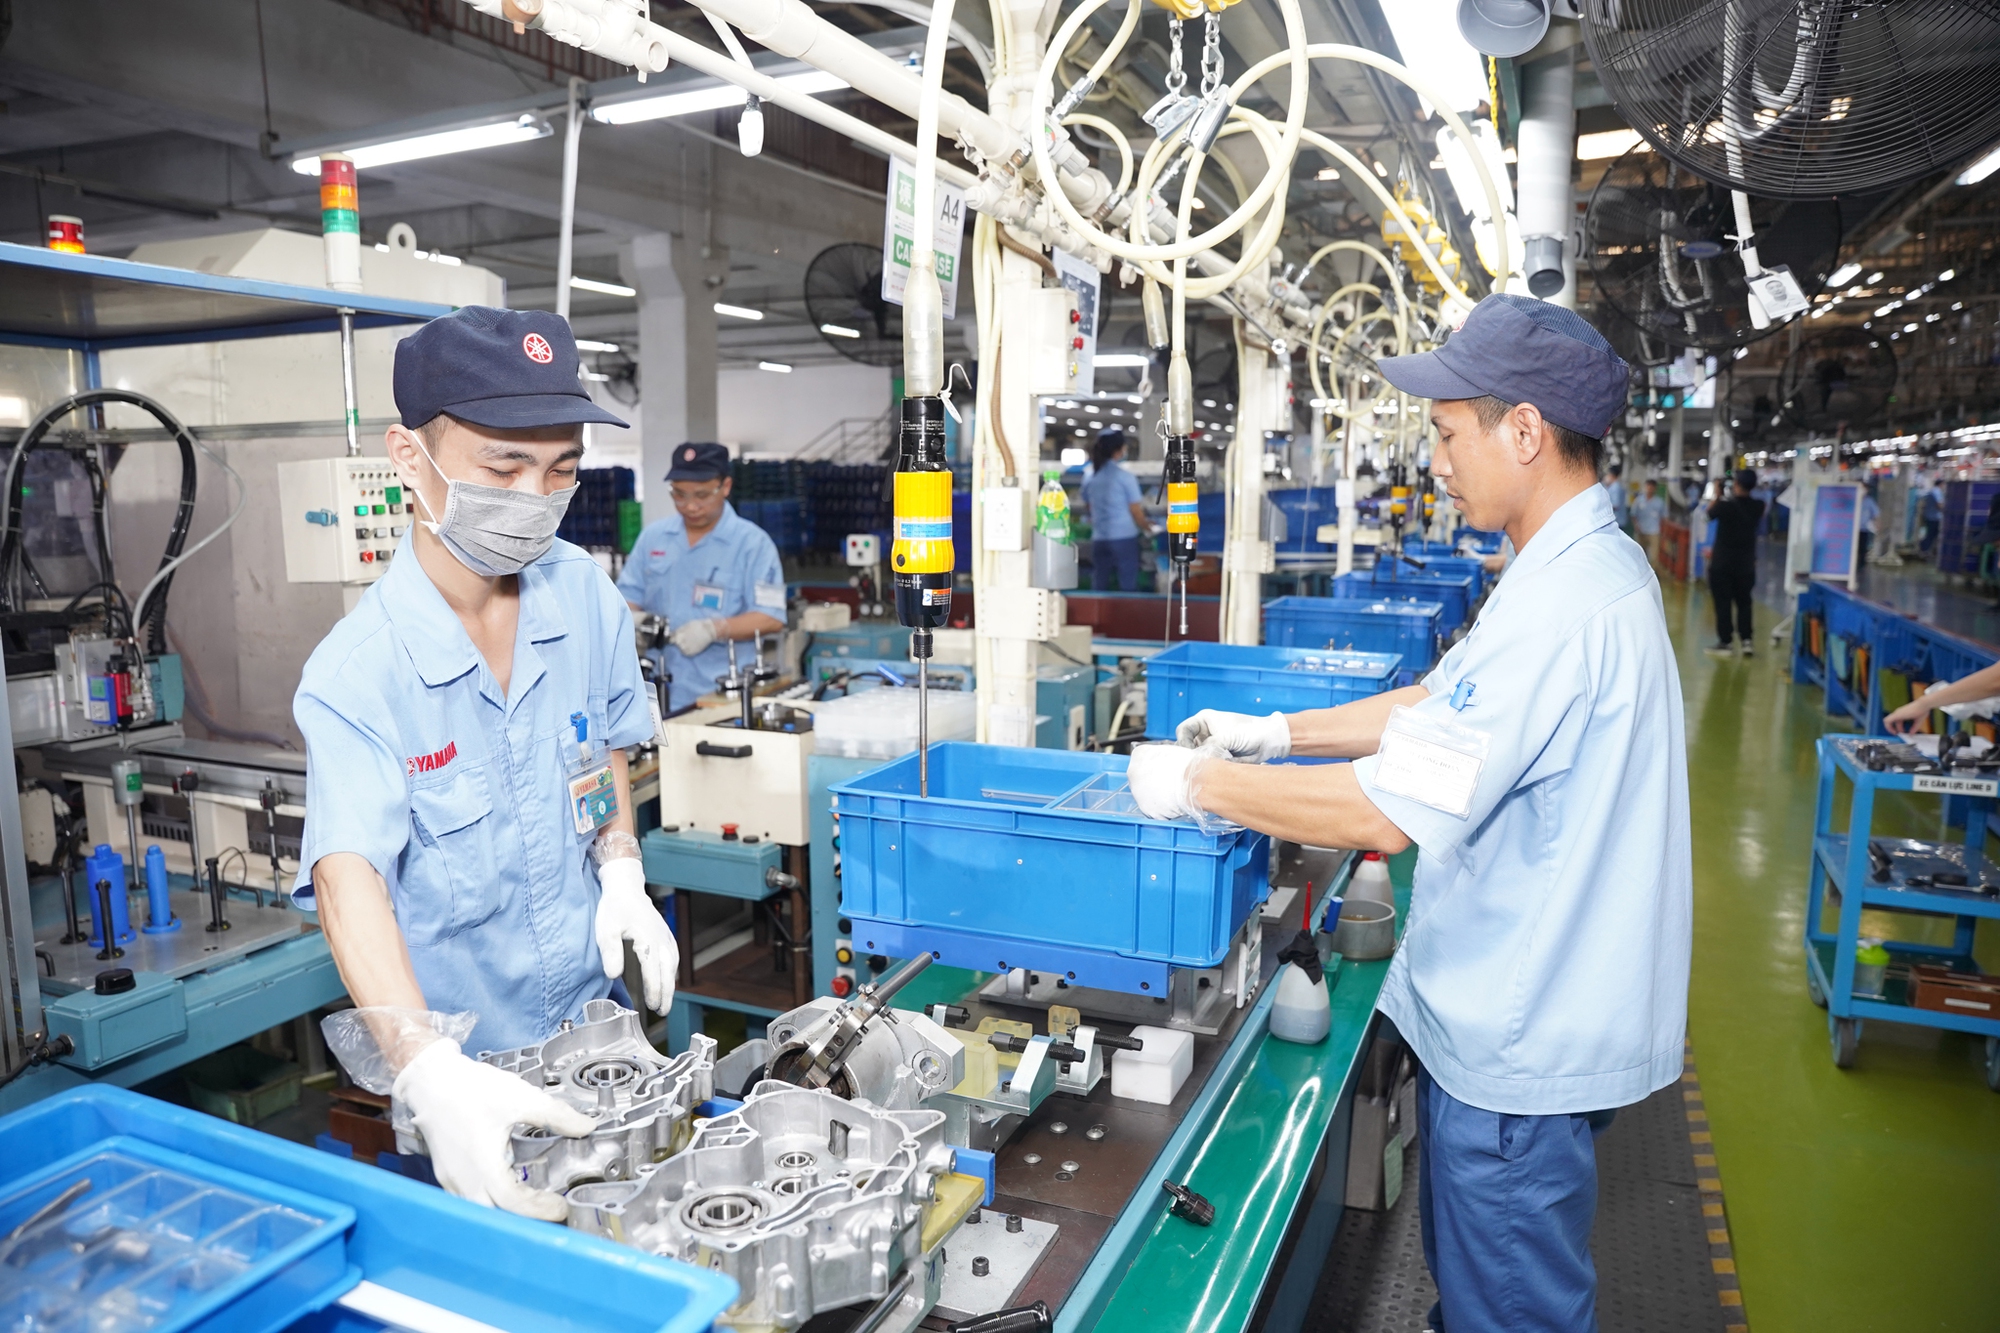 Xem dây chuyền lắp động cơ xe máy xuất khẩu tại Việt Nam: Ít nhất 400 chiếc/ngày, đóng bao bì cẩn thận - Ảnh 1.